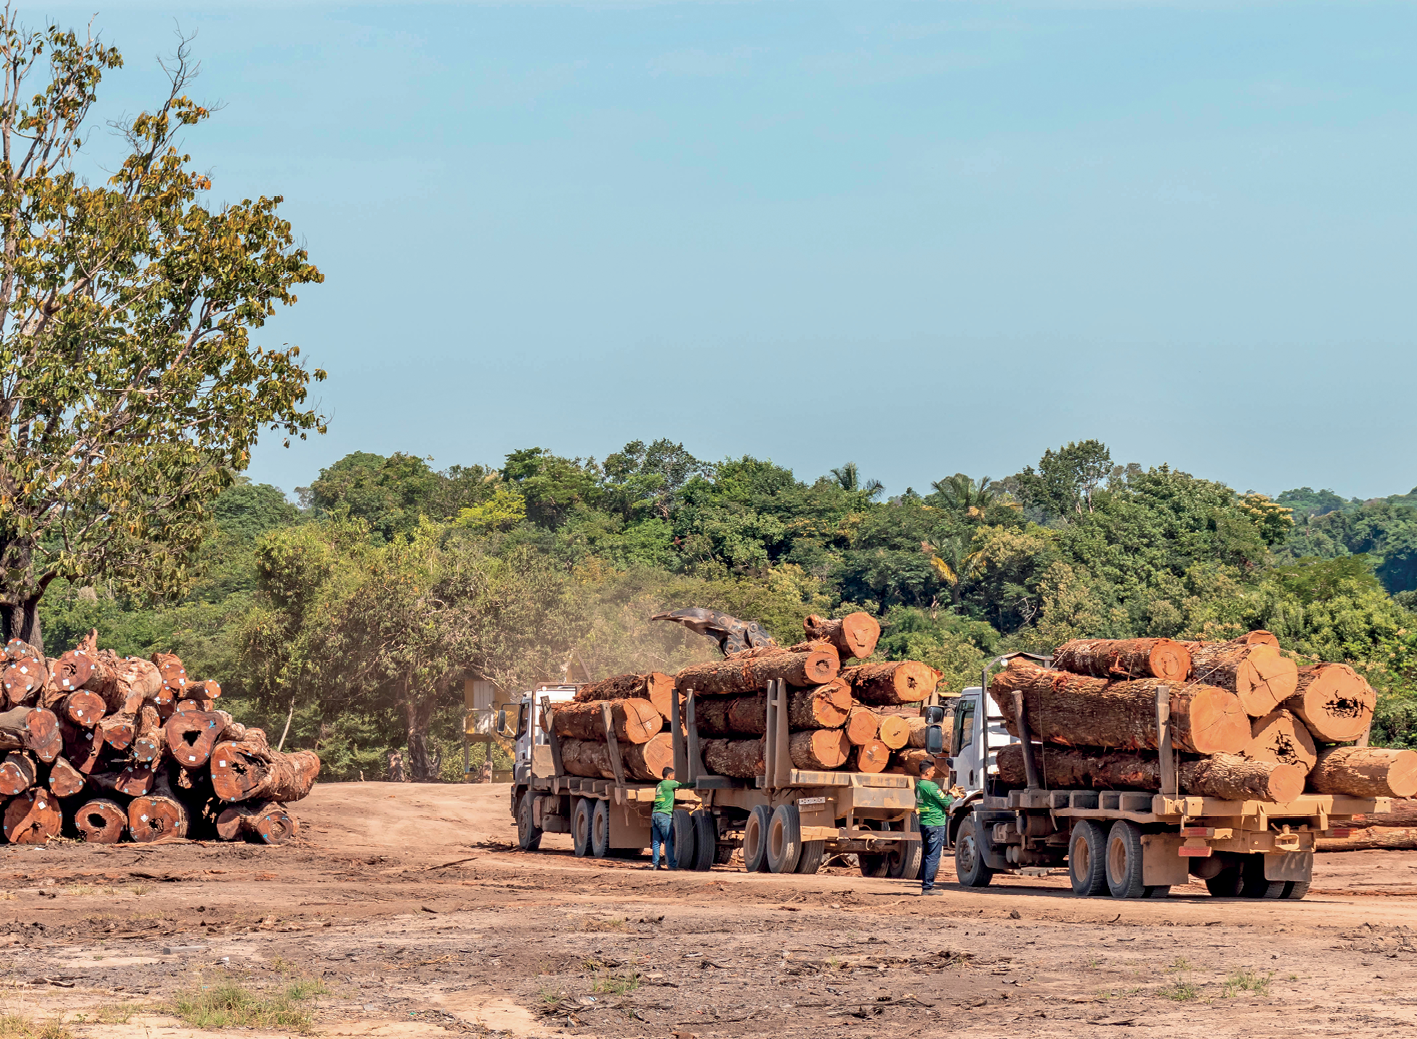 Fotografia. Três caminhões carregando troncos grossos de árvores. Os troncos são grandes e estão empilhados. Do lado esquerdo, há uma pilha de outros troncos empilhados no chão. Ao fundo, vegetação densa formada por árvores.